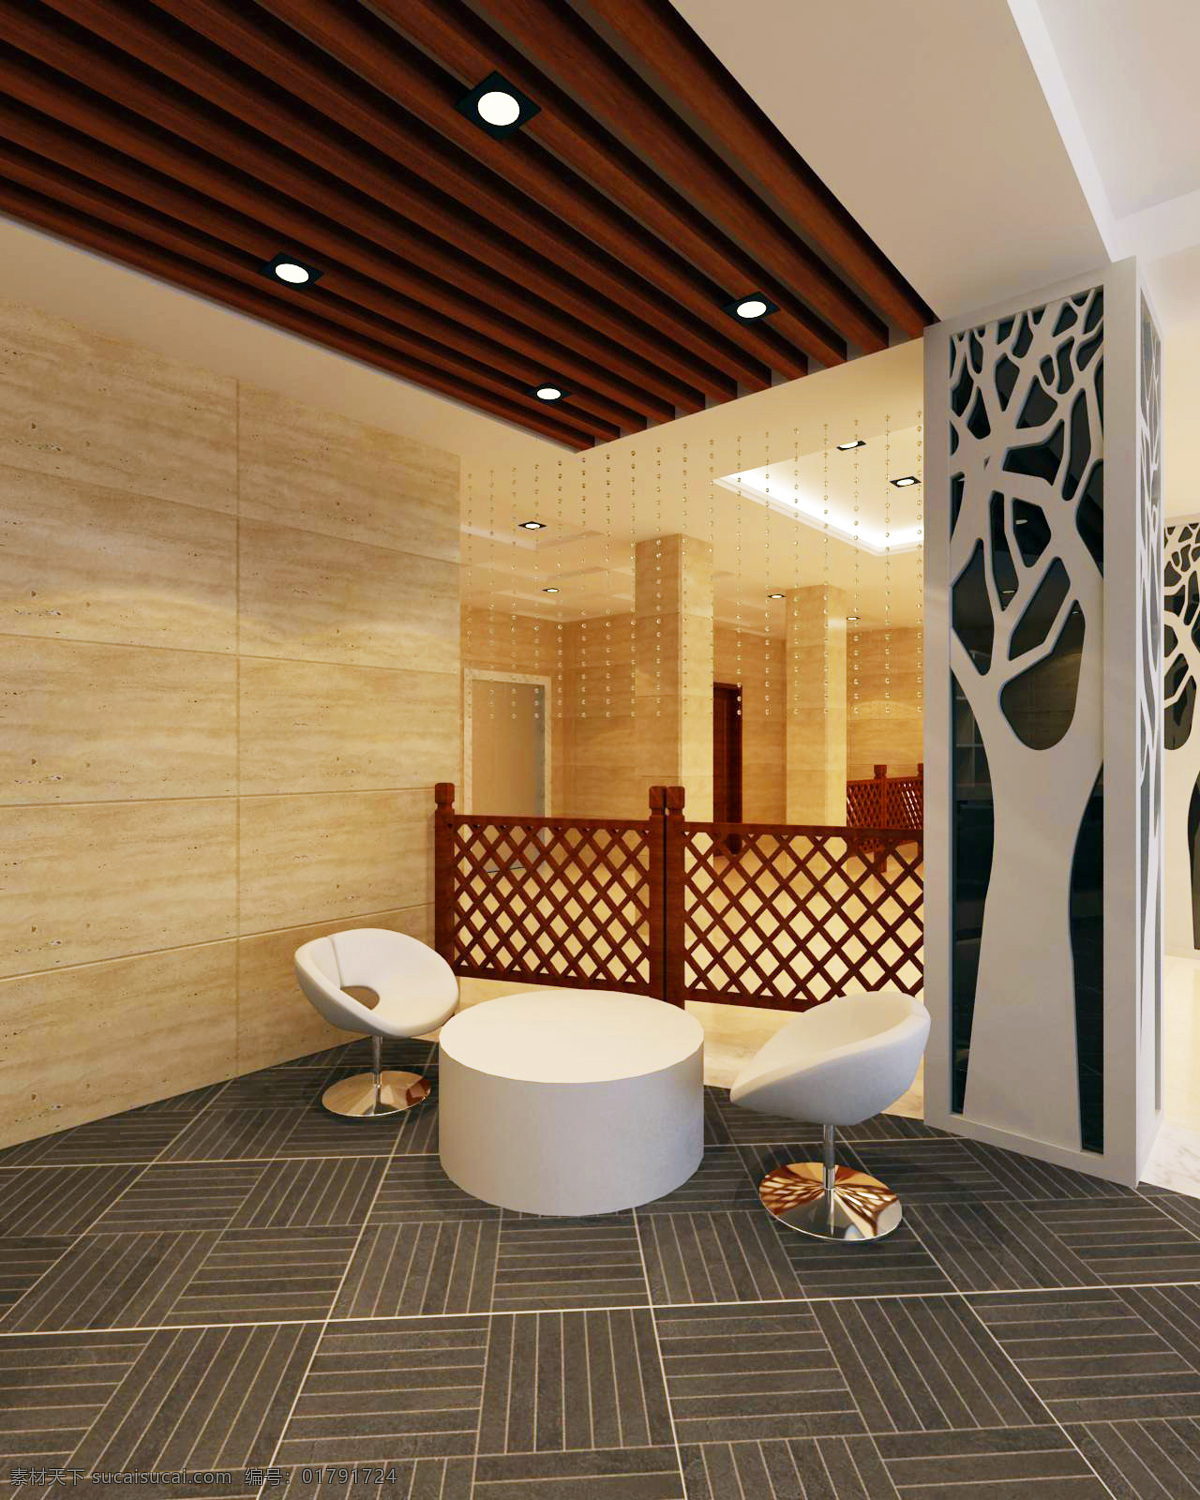 时尚 酒店 大厅 环境设计 前卫 室内设计 现代 时尚酒店大厅 家居装饰素材